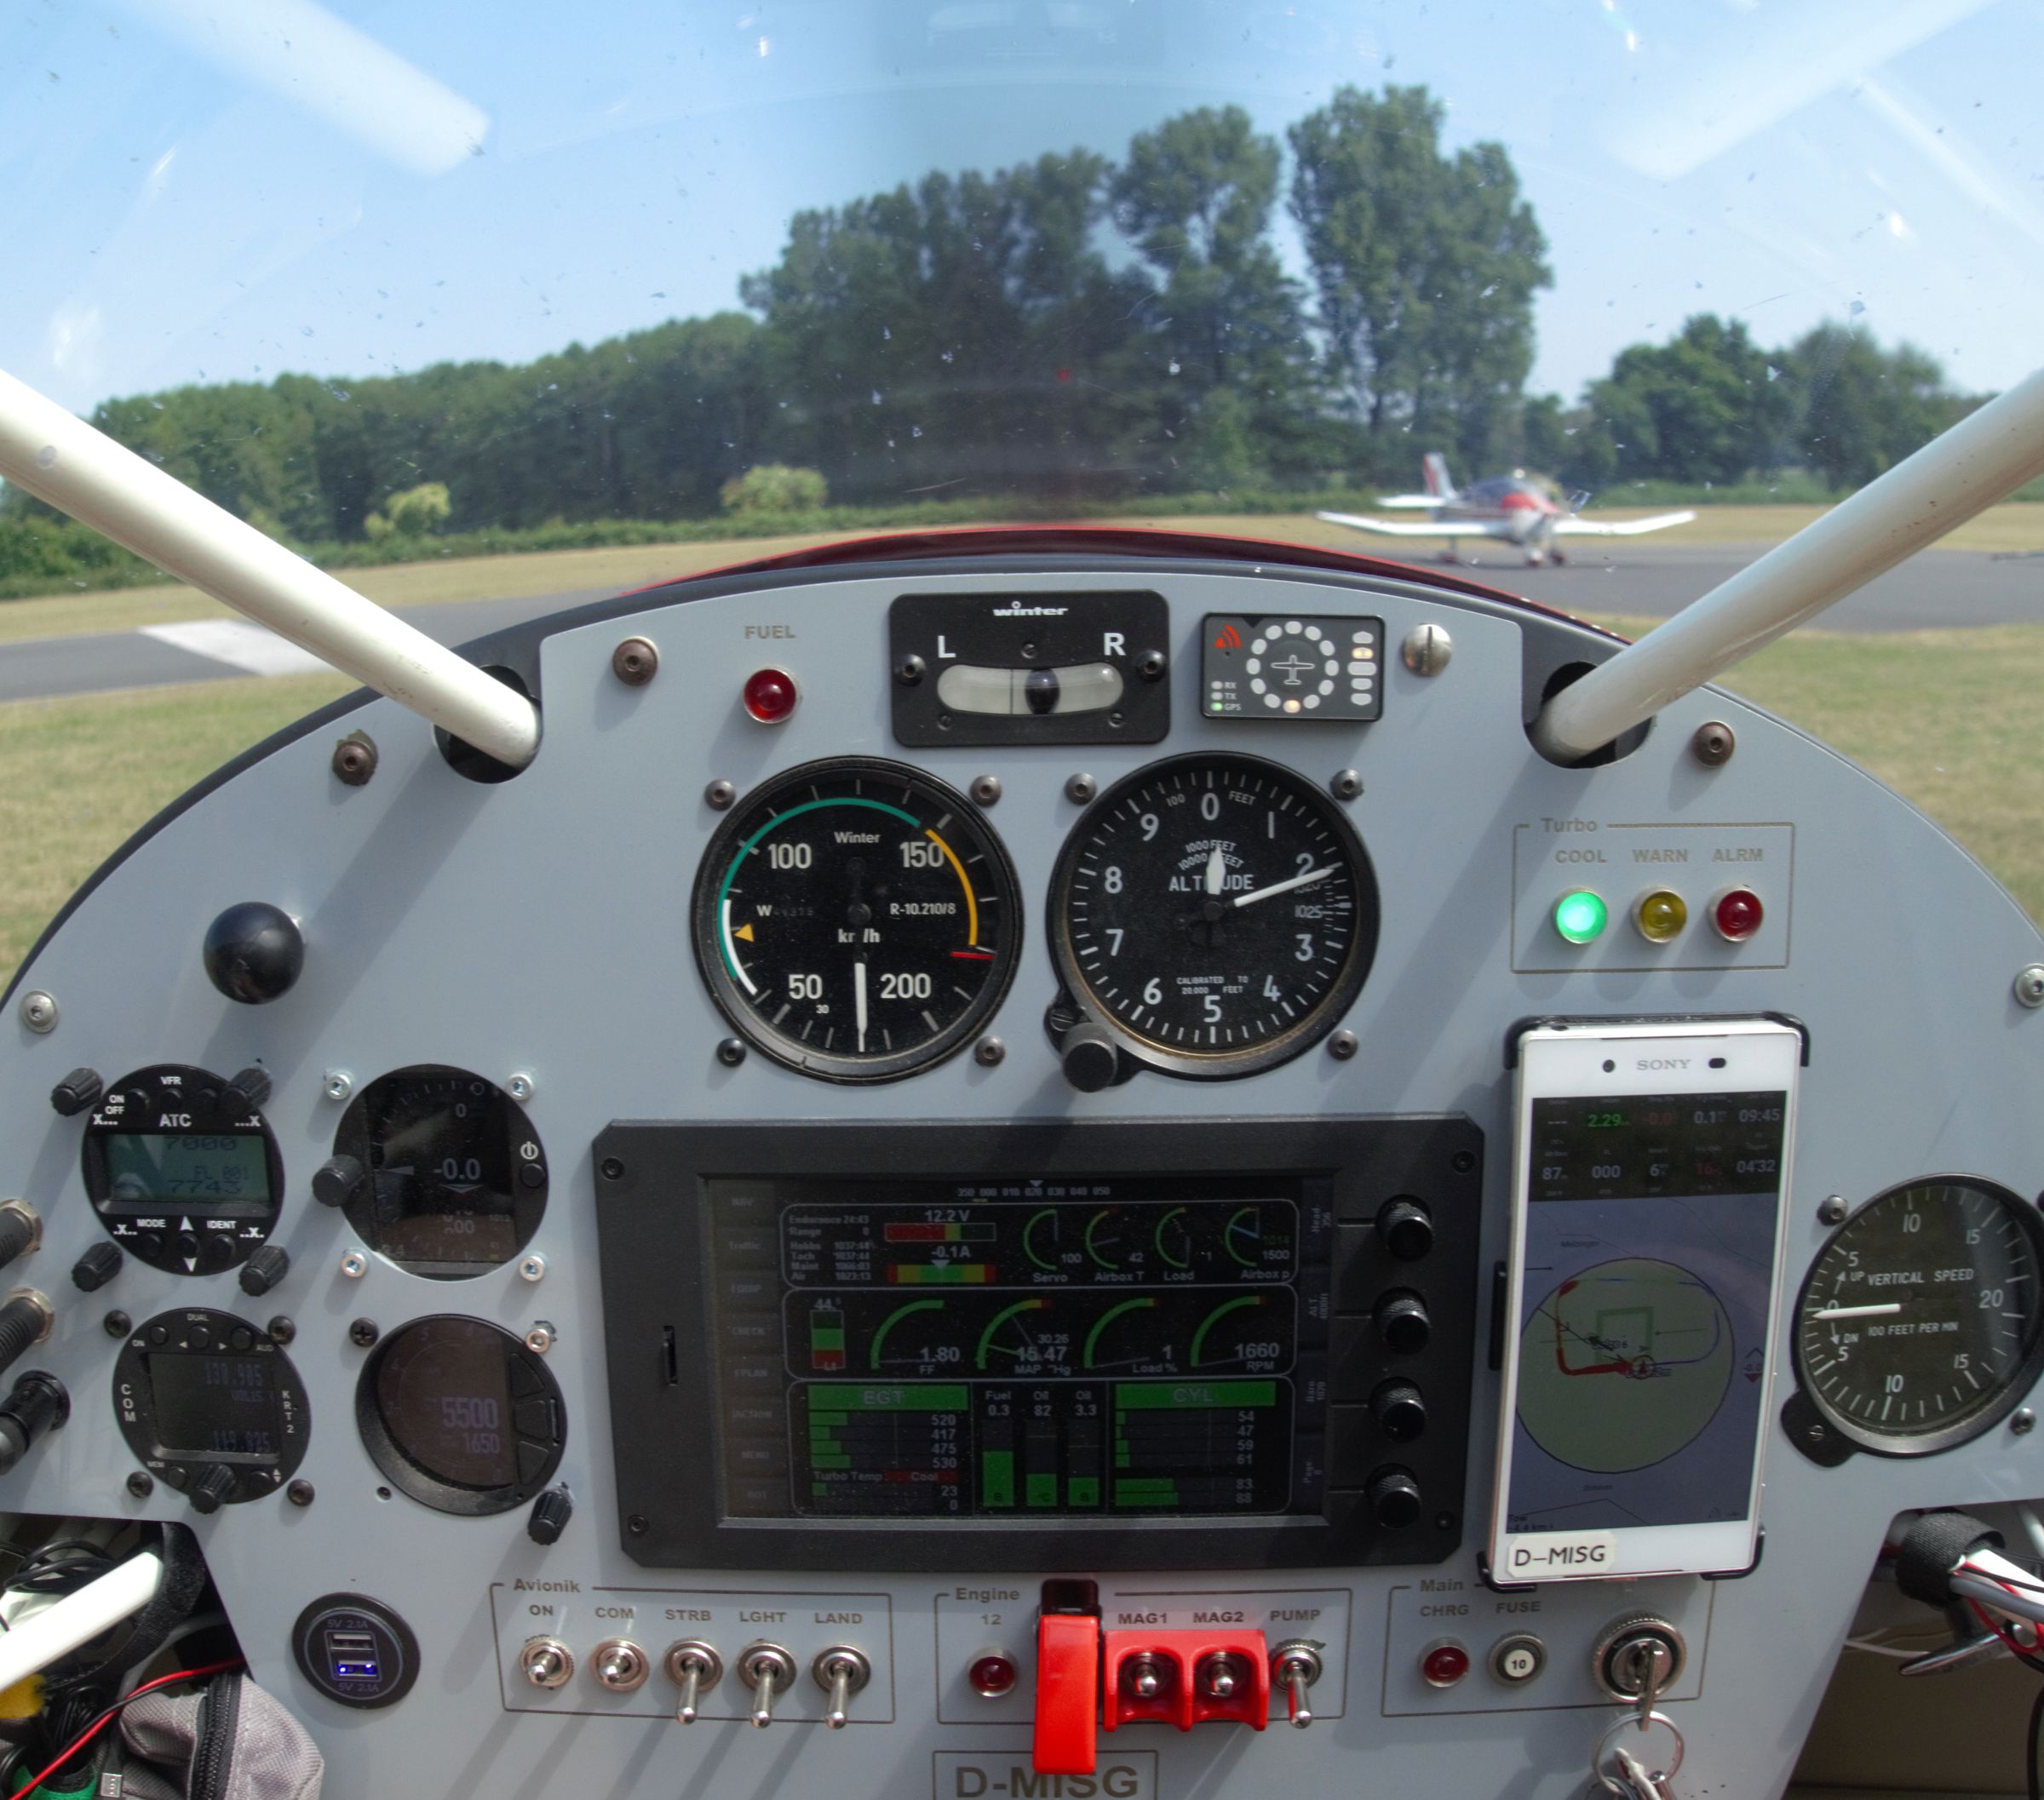 2006 Zlin Aviation Savage Cruiser - Interior